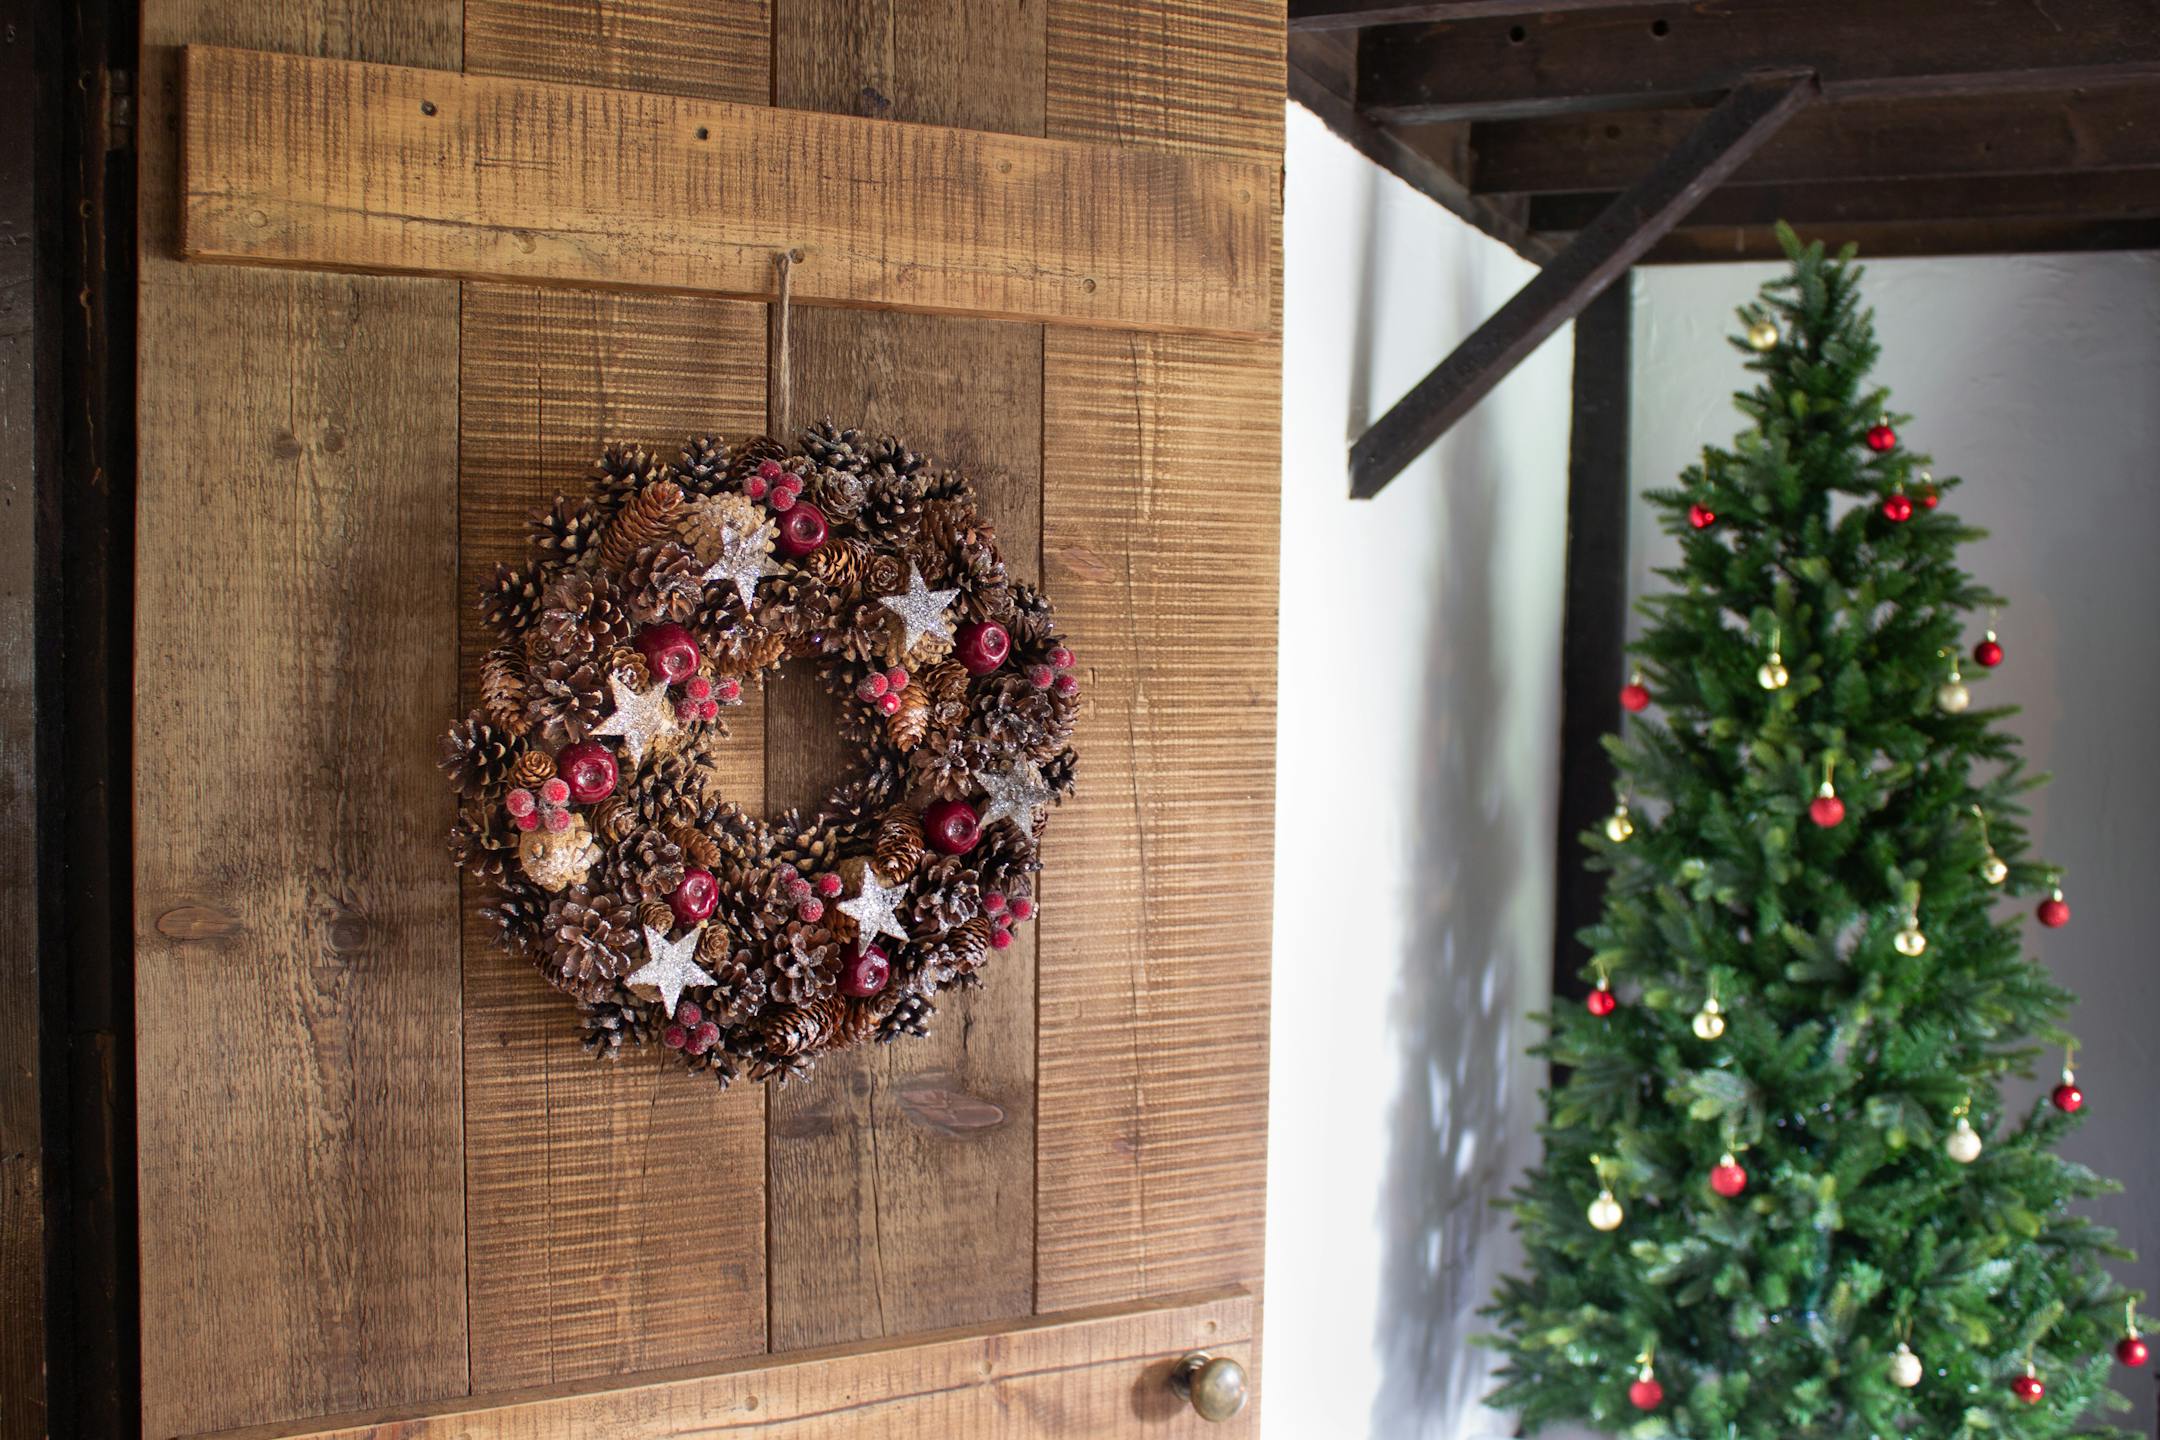 Artificial winter spice wreath on wooden door